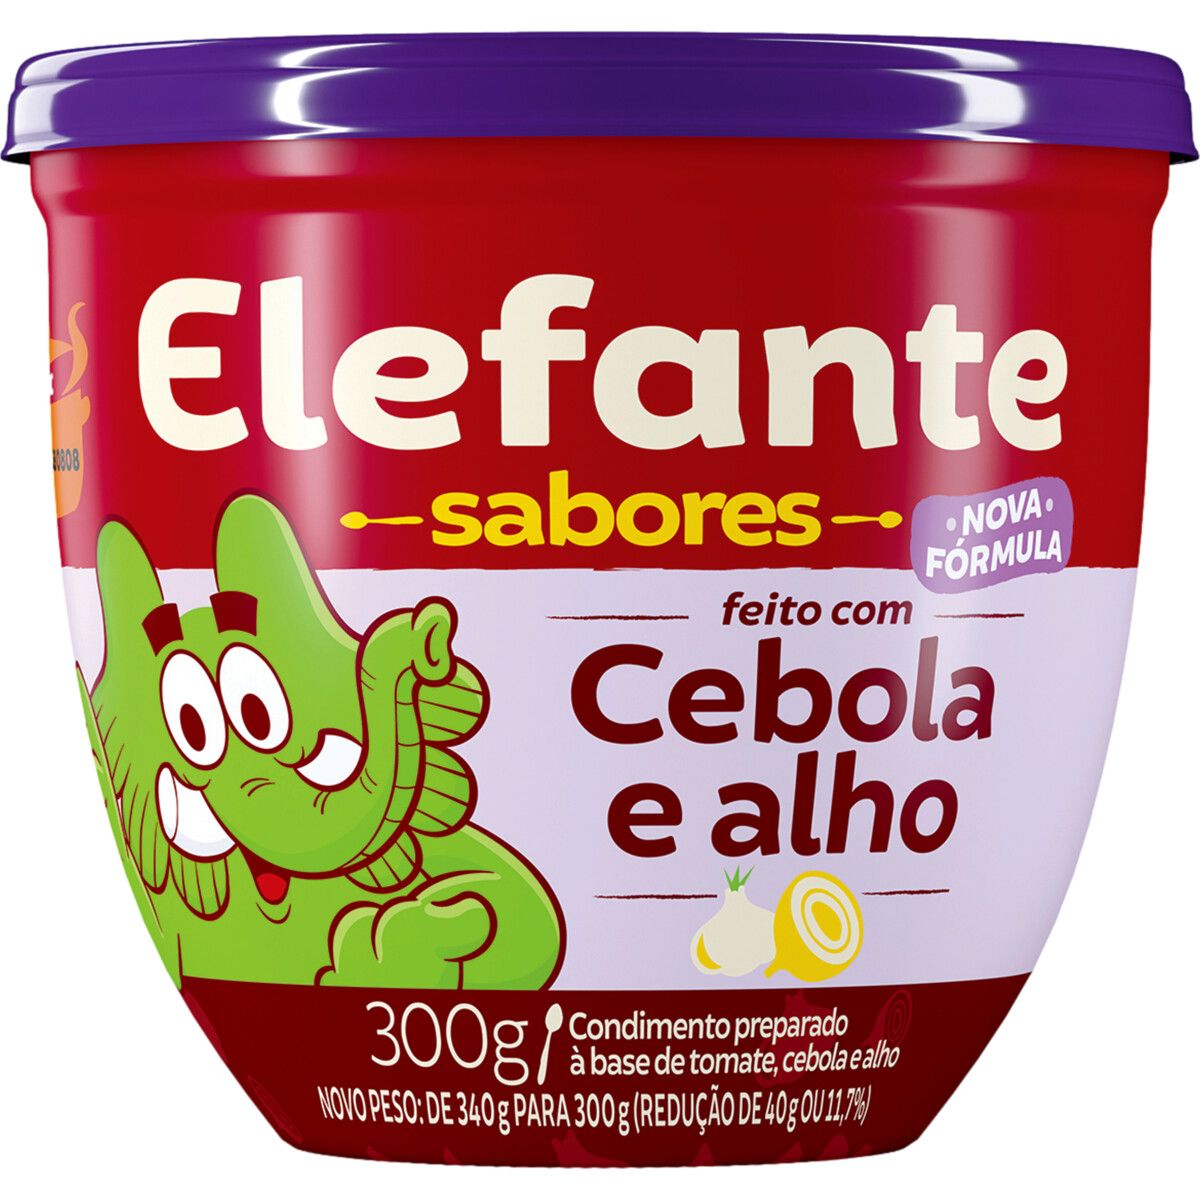 Extrato de Tomate Elefante com Cebola e Alho 300g